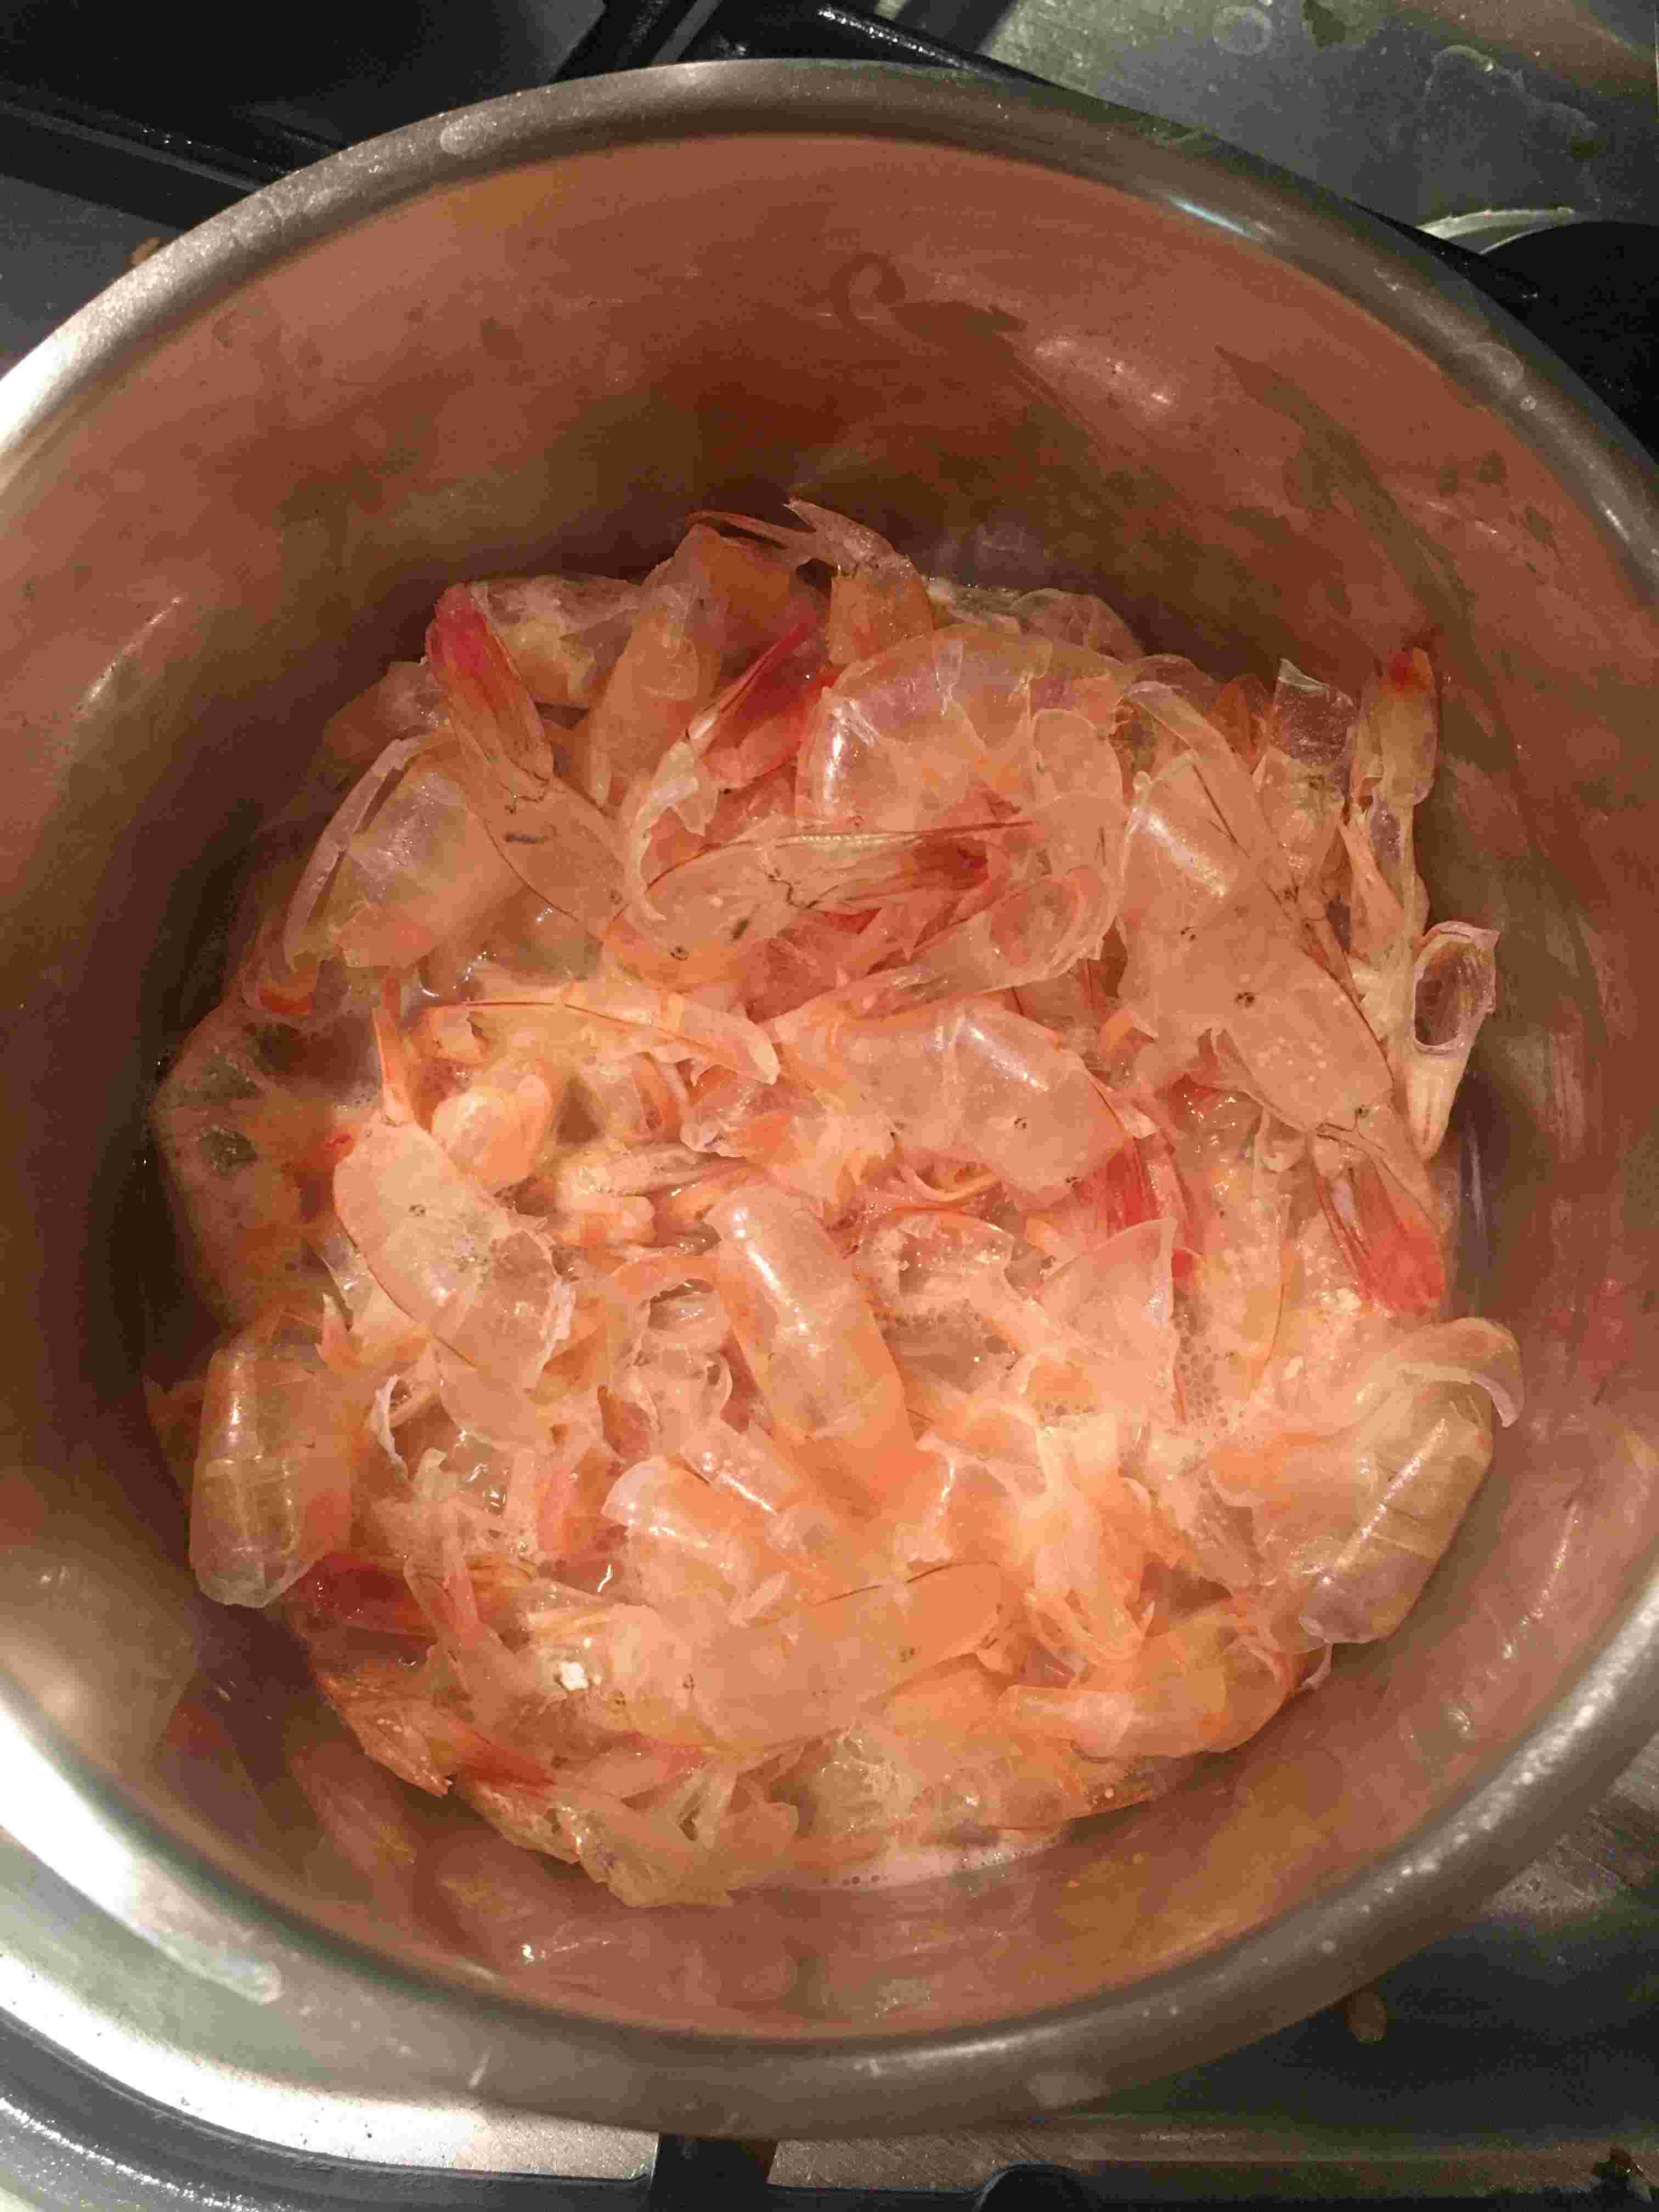 Shrimp shells turning pink after simmering